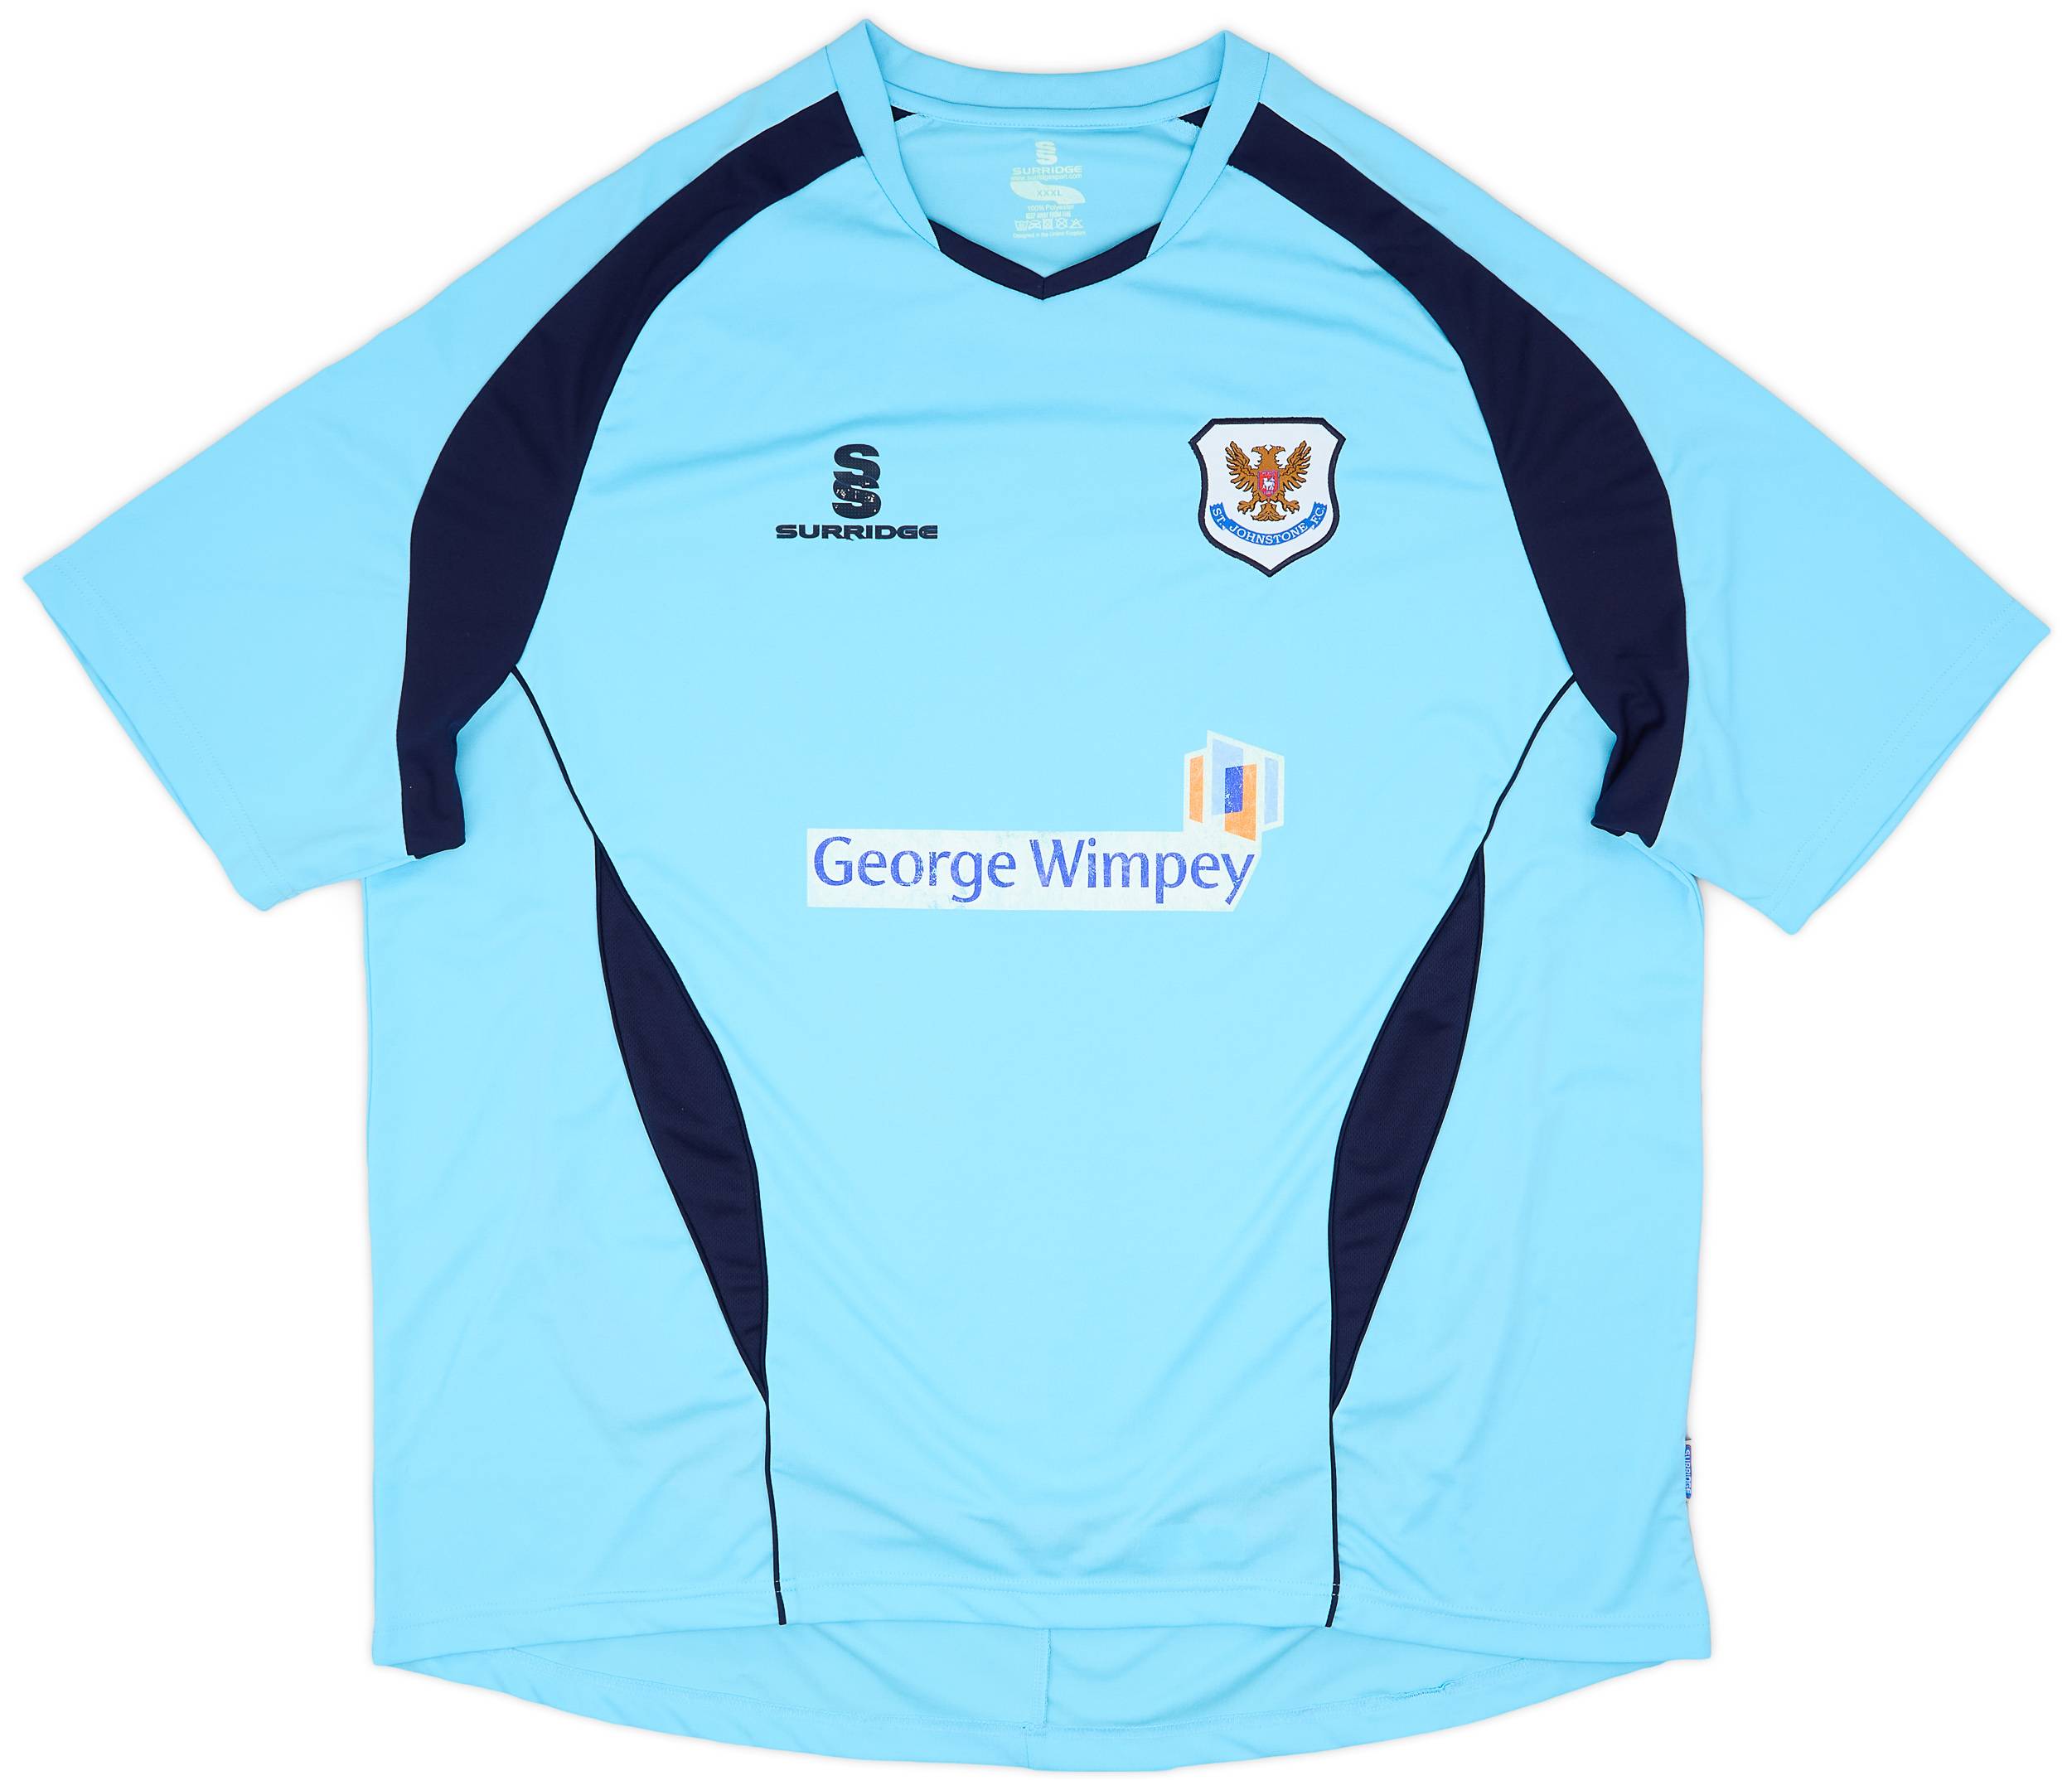 2008-09 St Johnstone Away Shirt - 5/10 - (3XL)